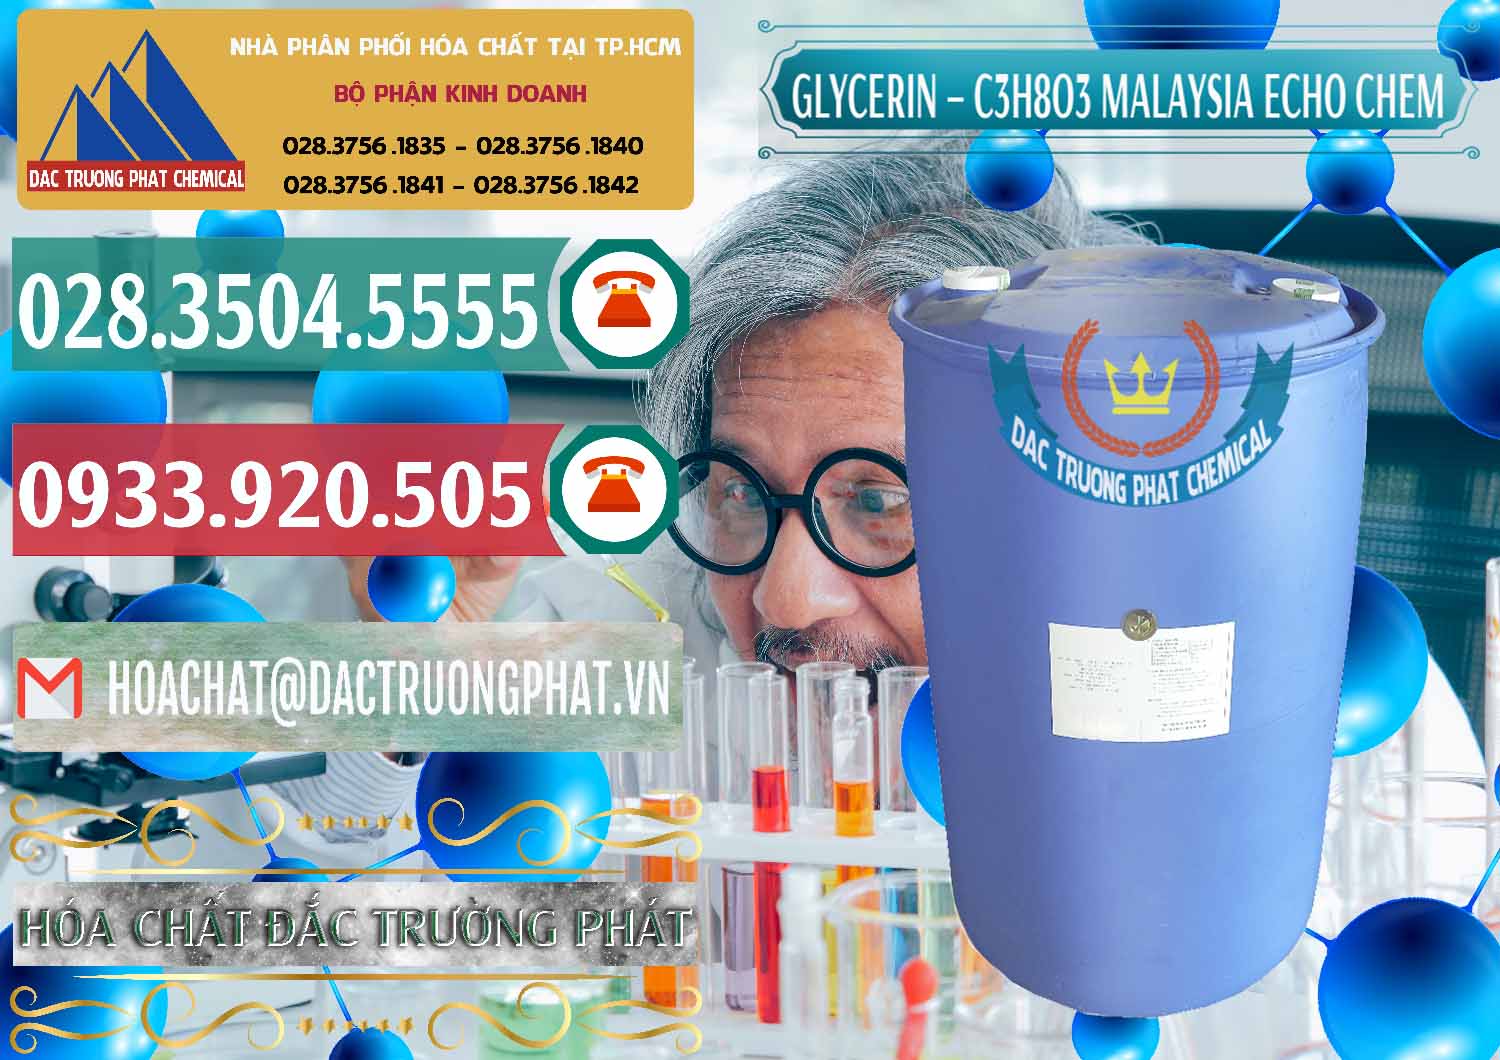 Cung cấp và bán C3H8O3 - Glycerin 99.7% Echo Chem Malaysia - 0273 - Cty kinh doanh - phân phối hóa chất tại TP.HCM - muabanhoachat.vn